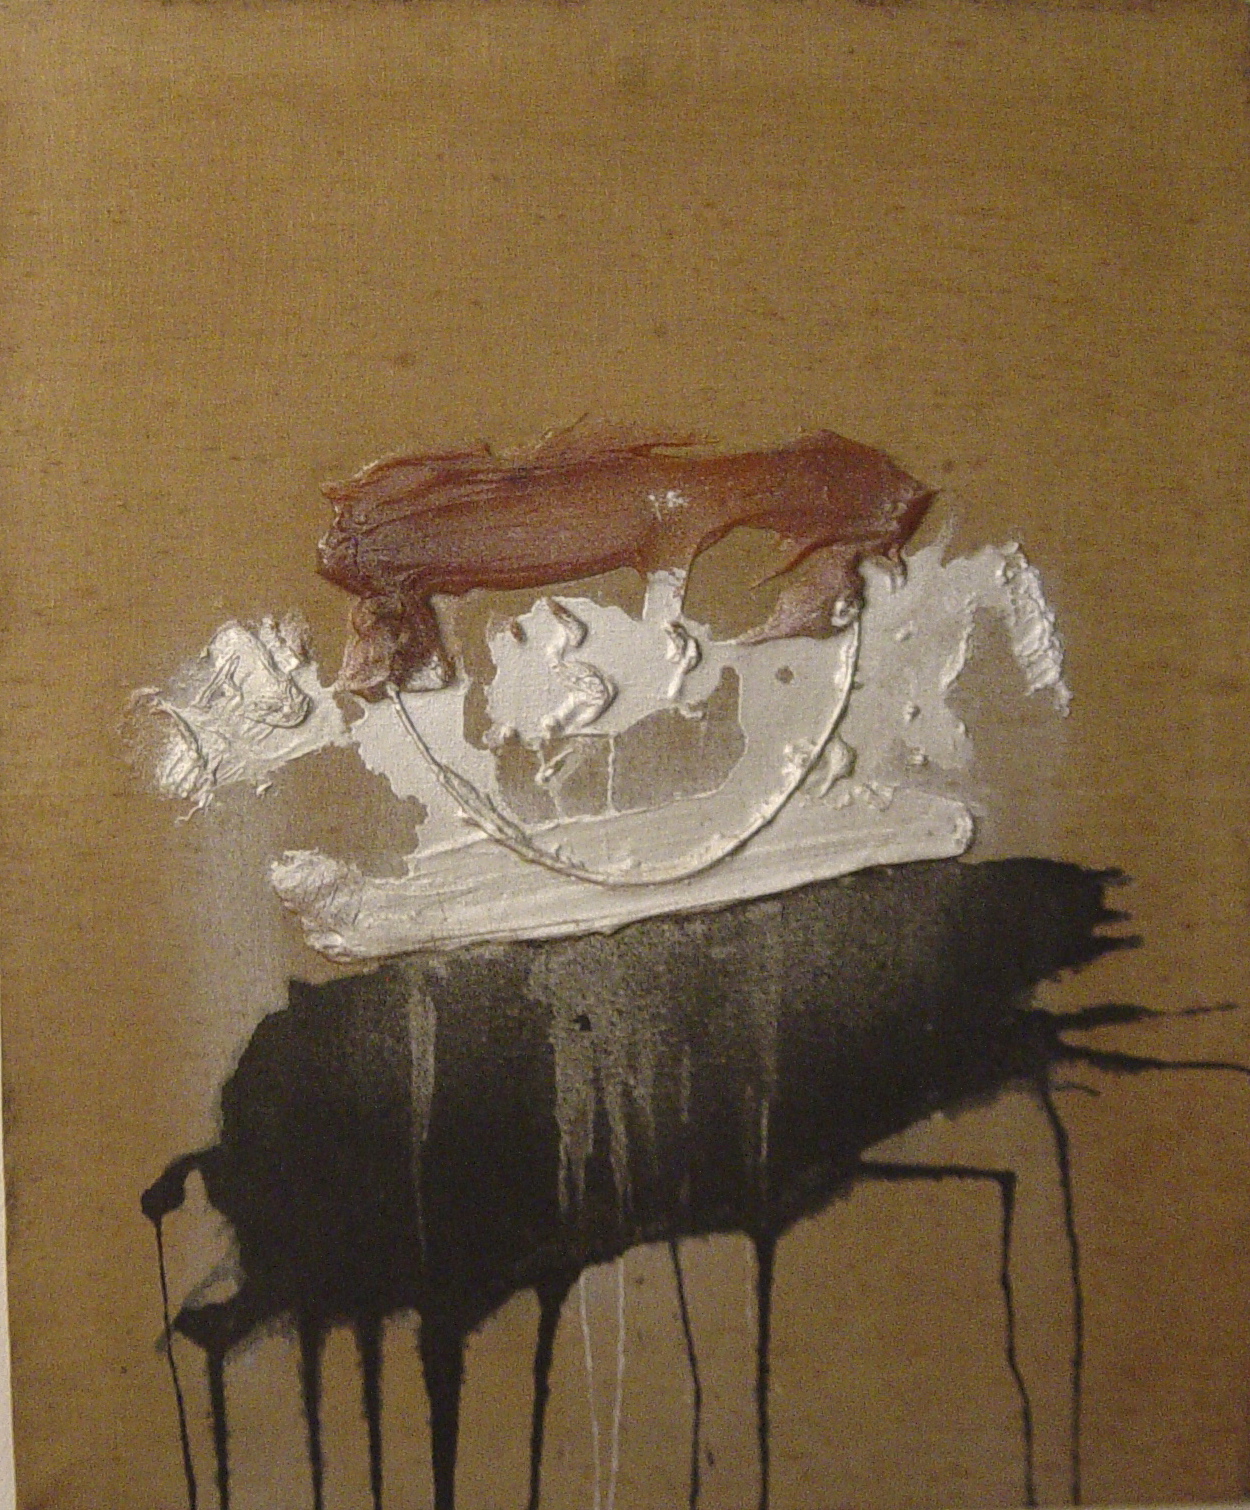 Senza titolo, 1970, colla, polvere d'argento e colore su tela, 73 x 60 cm